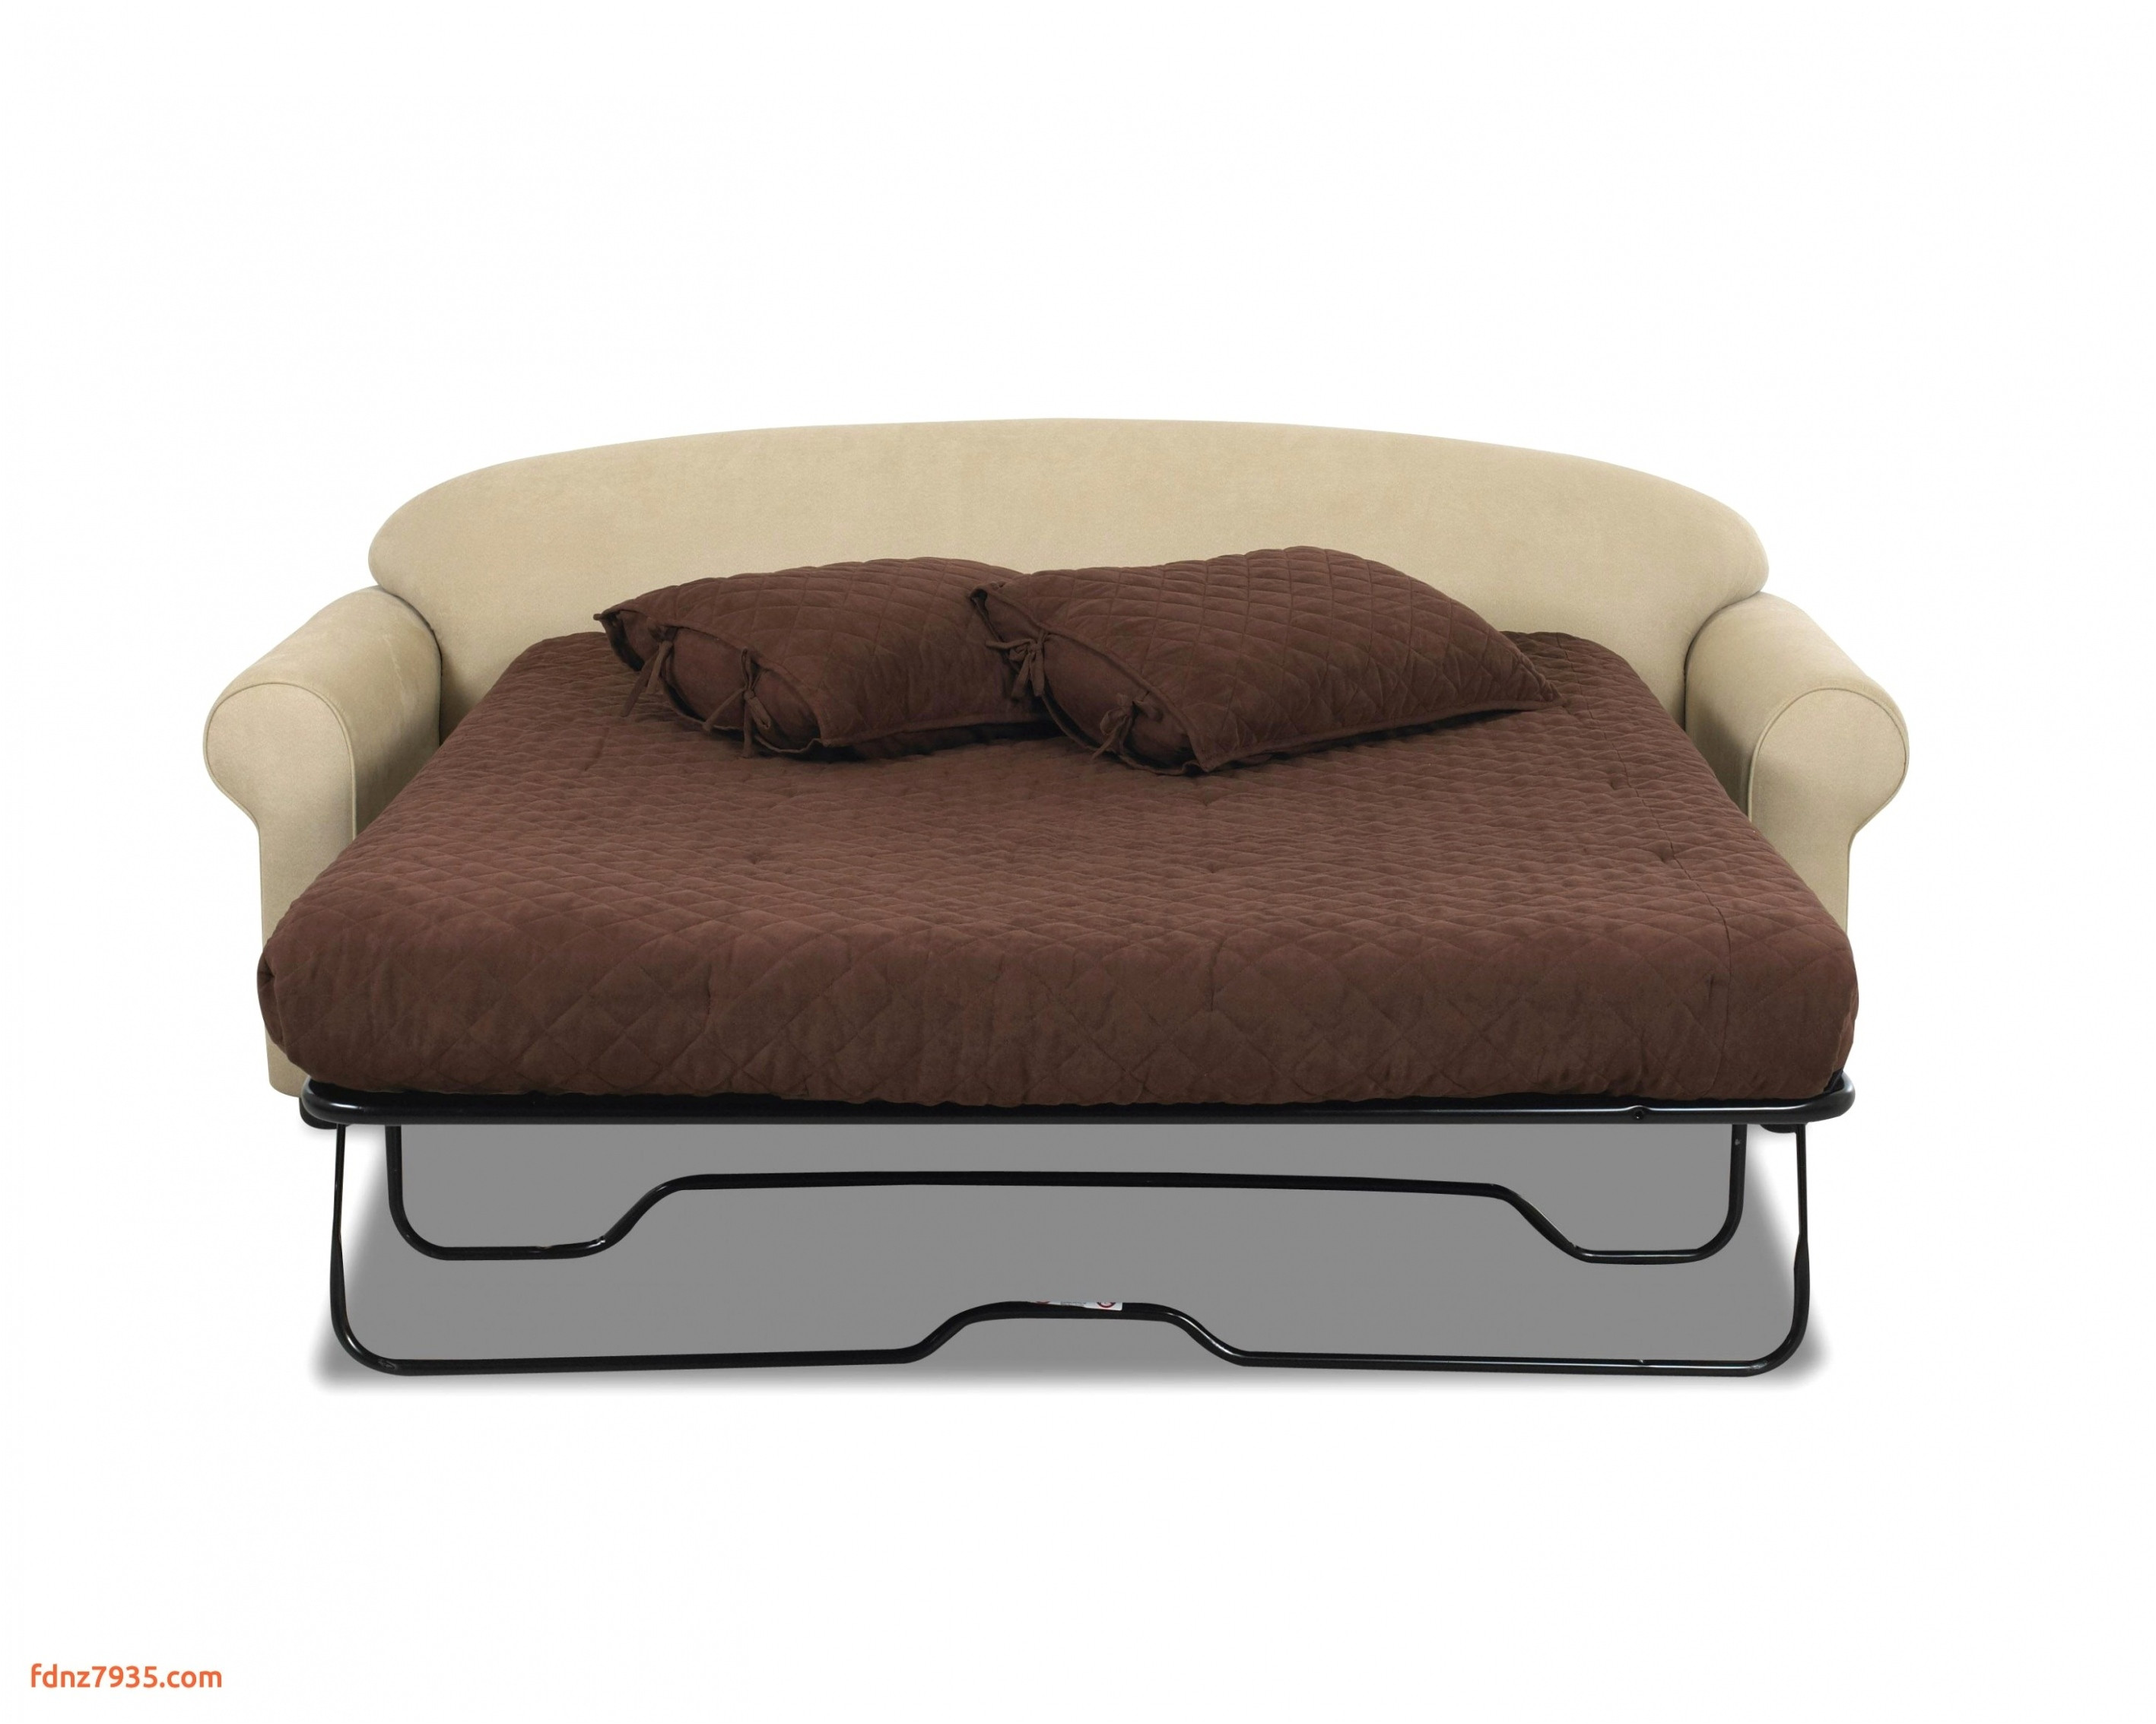 single bed sofa sleeper new arezzo sleeper sofa luxury modu owa cena od twin